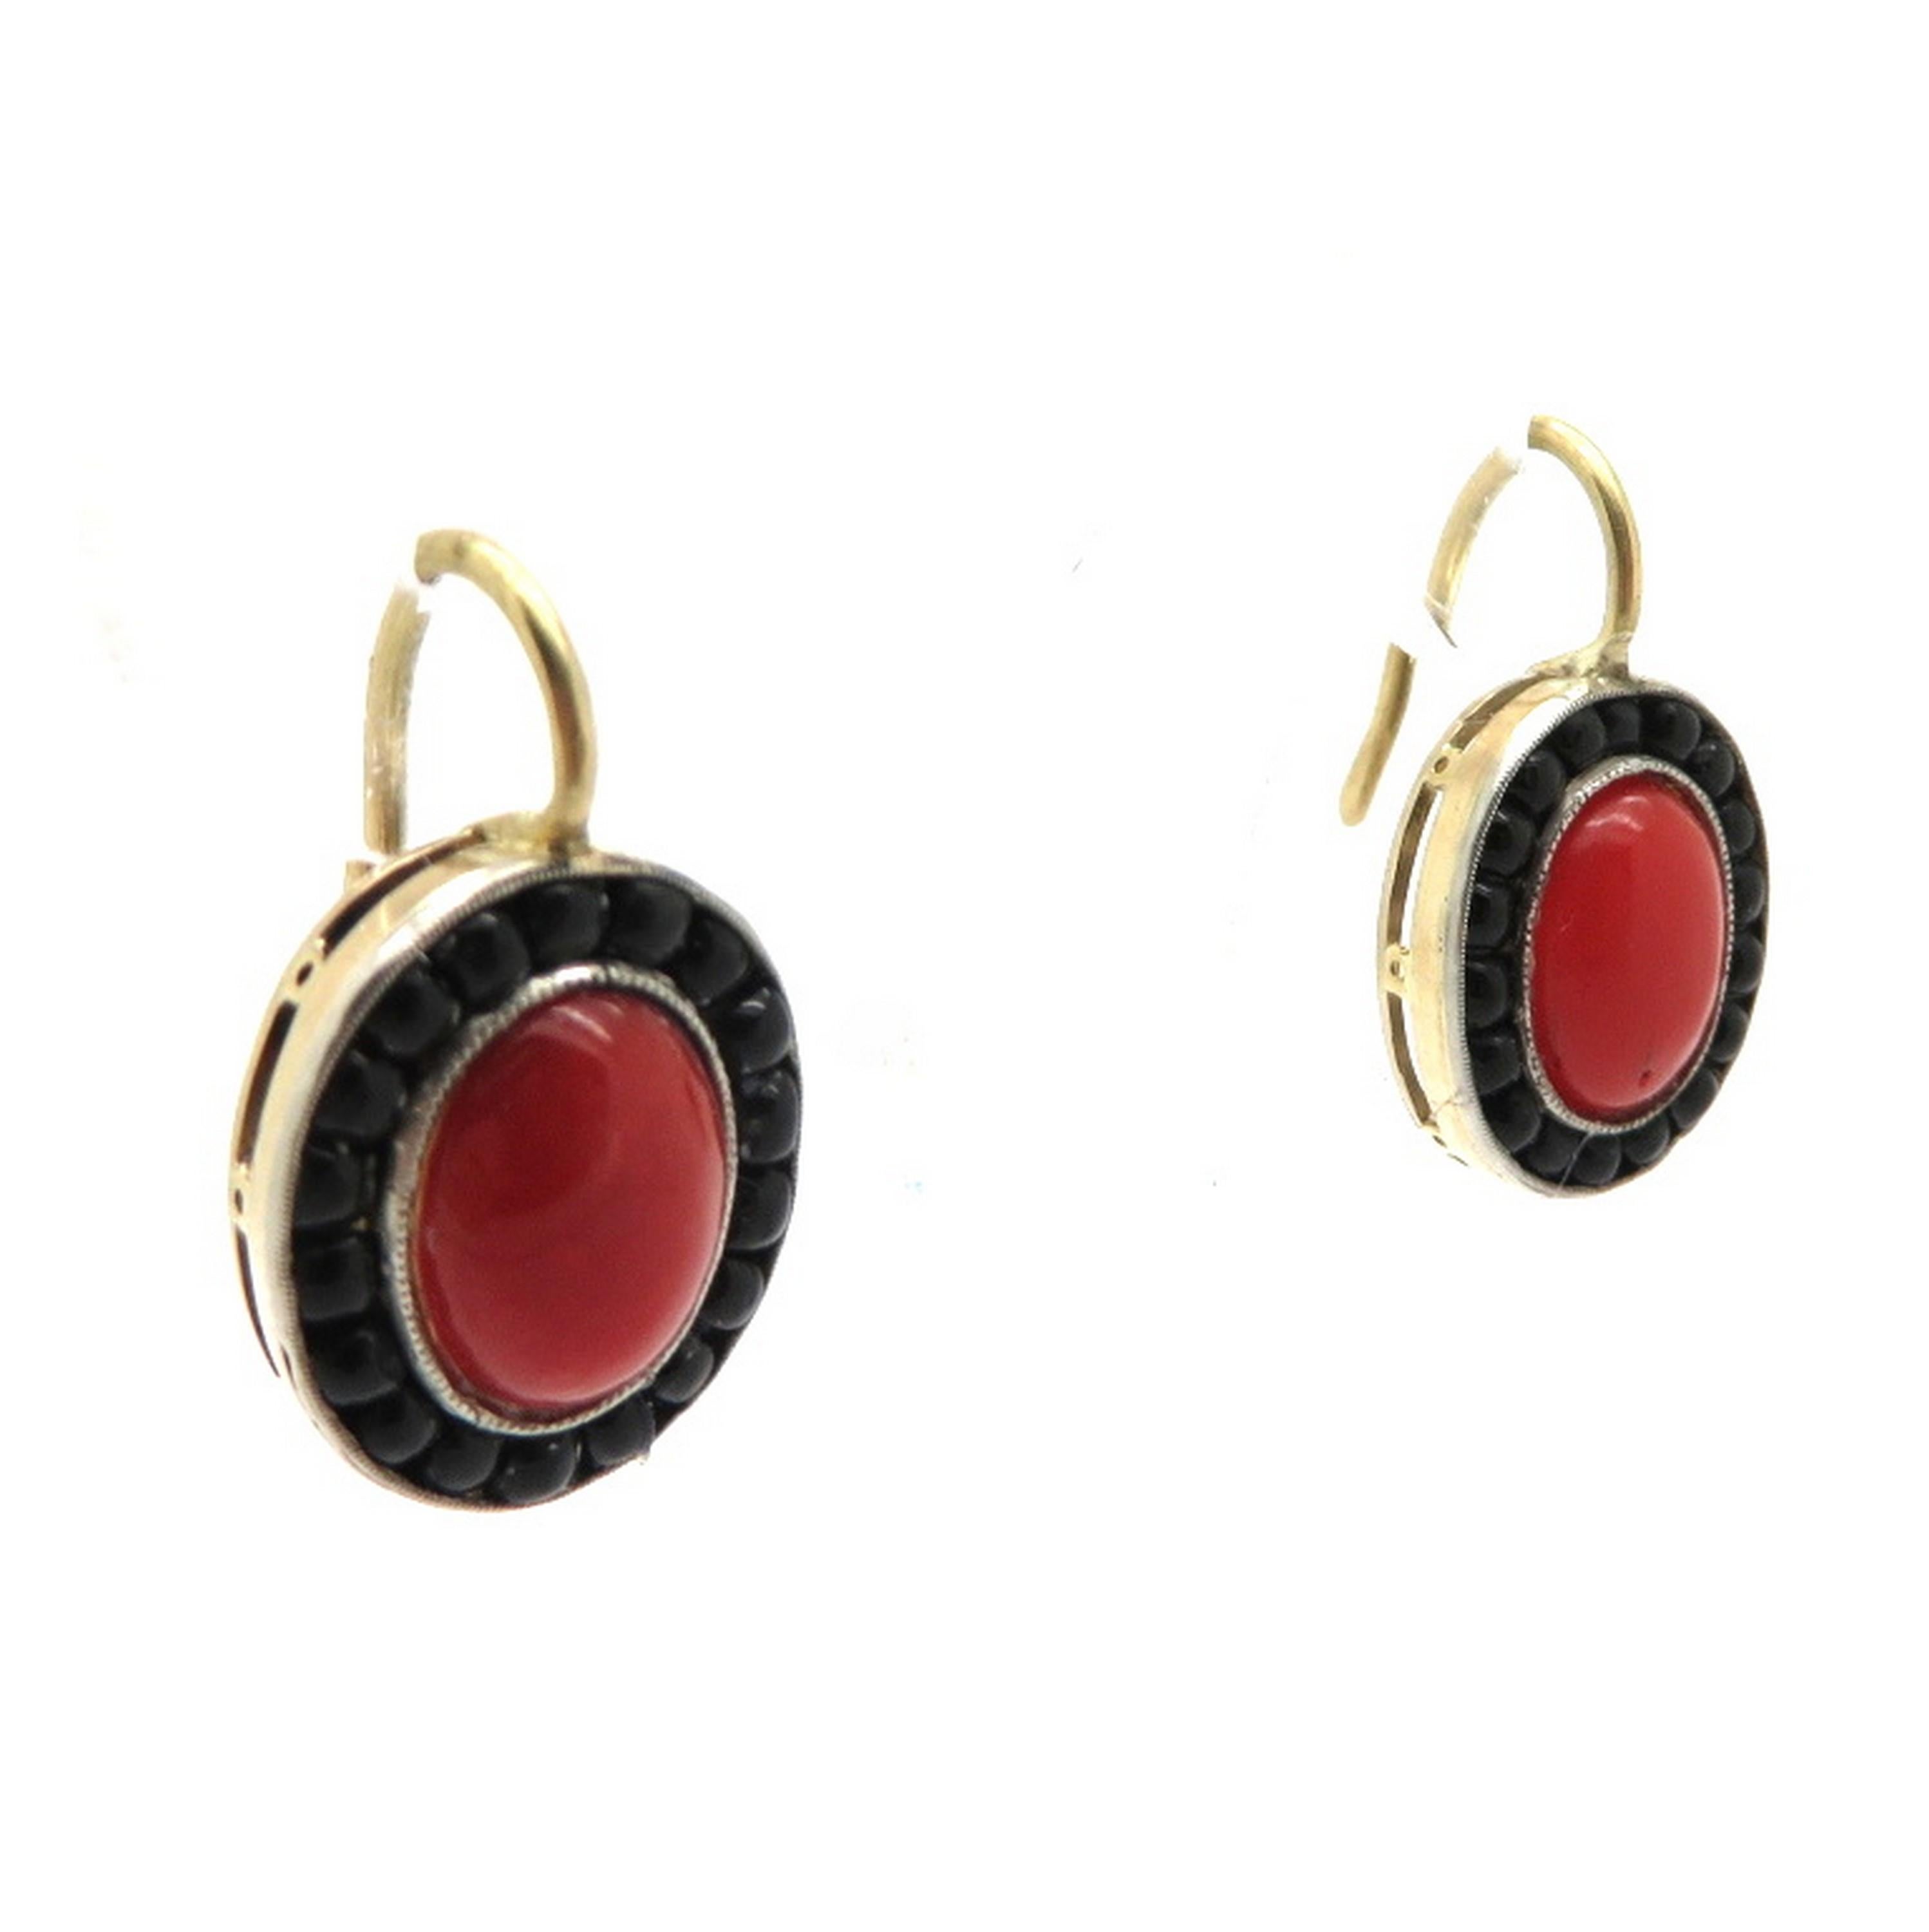 Boucles d'oreilles pendantes en or jaune 18 carats des années 1950 en corail et onyx. Centré sur deux cabochons de corail rouge. Chaque boucle d'oreille est agrémentée d'un halo composé de 36 perles rondes cabochons en onyx noir. Les boucles